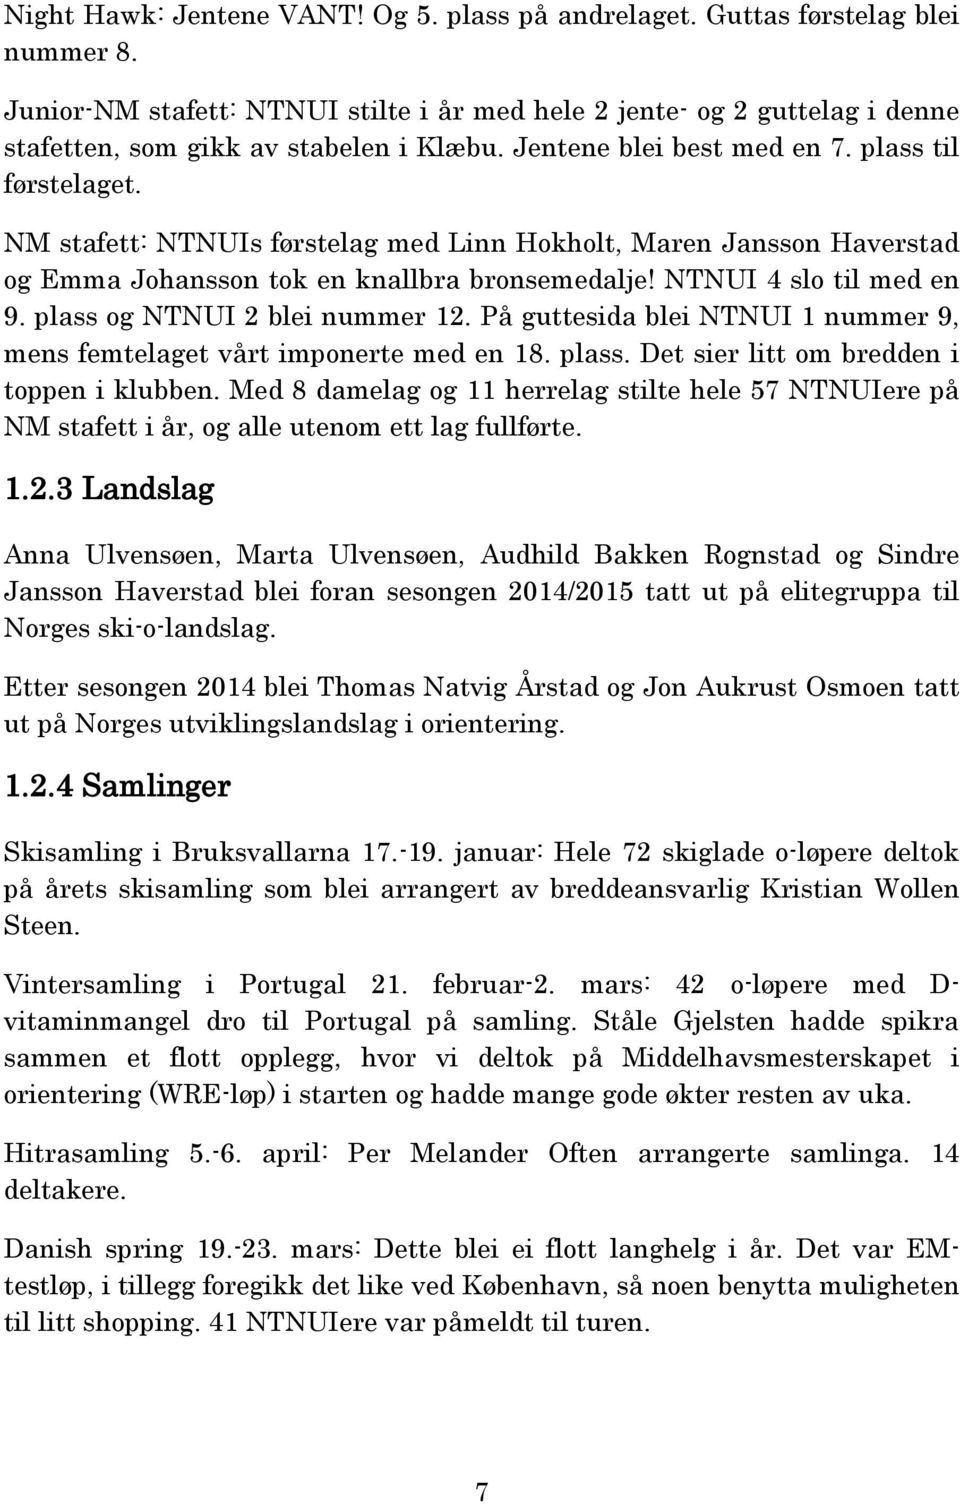 NM stafett: NTNUIs førstelag med Linn Hokholt, Maren Jansson Haverstad og Emma Johansson tok en knallbra bronsemedalje! NTNUI 4 slo til med en 9. plass og NTNUI 2 blei nummer 12.